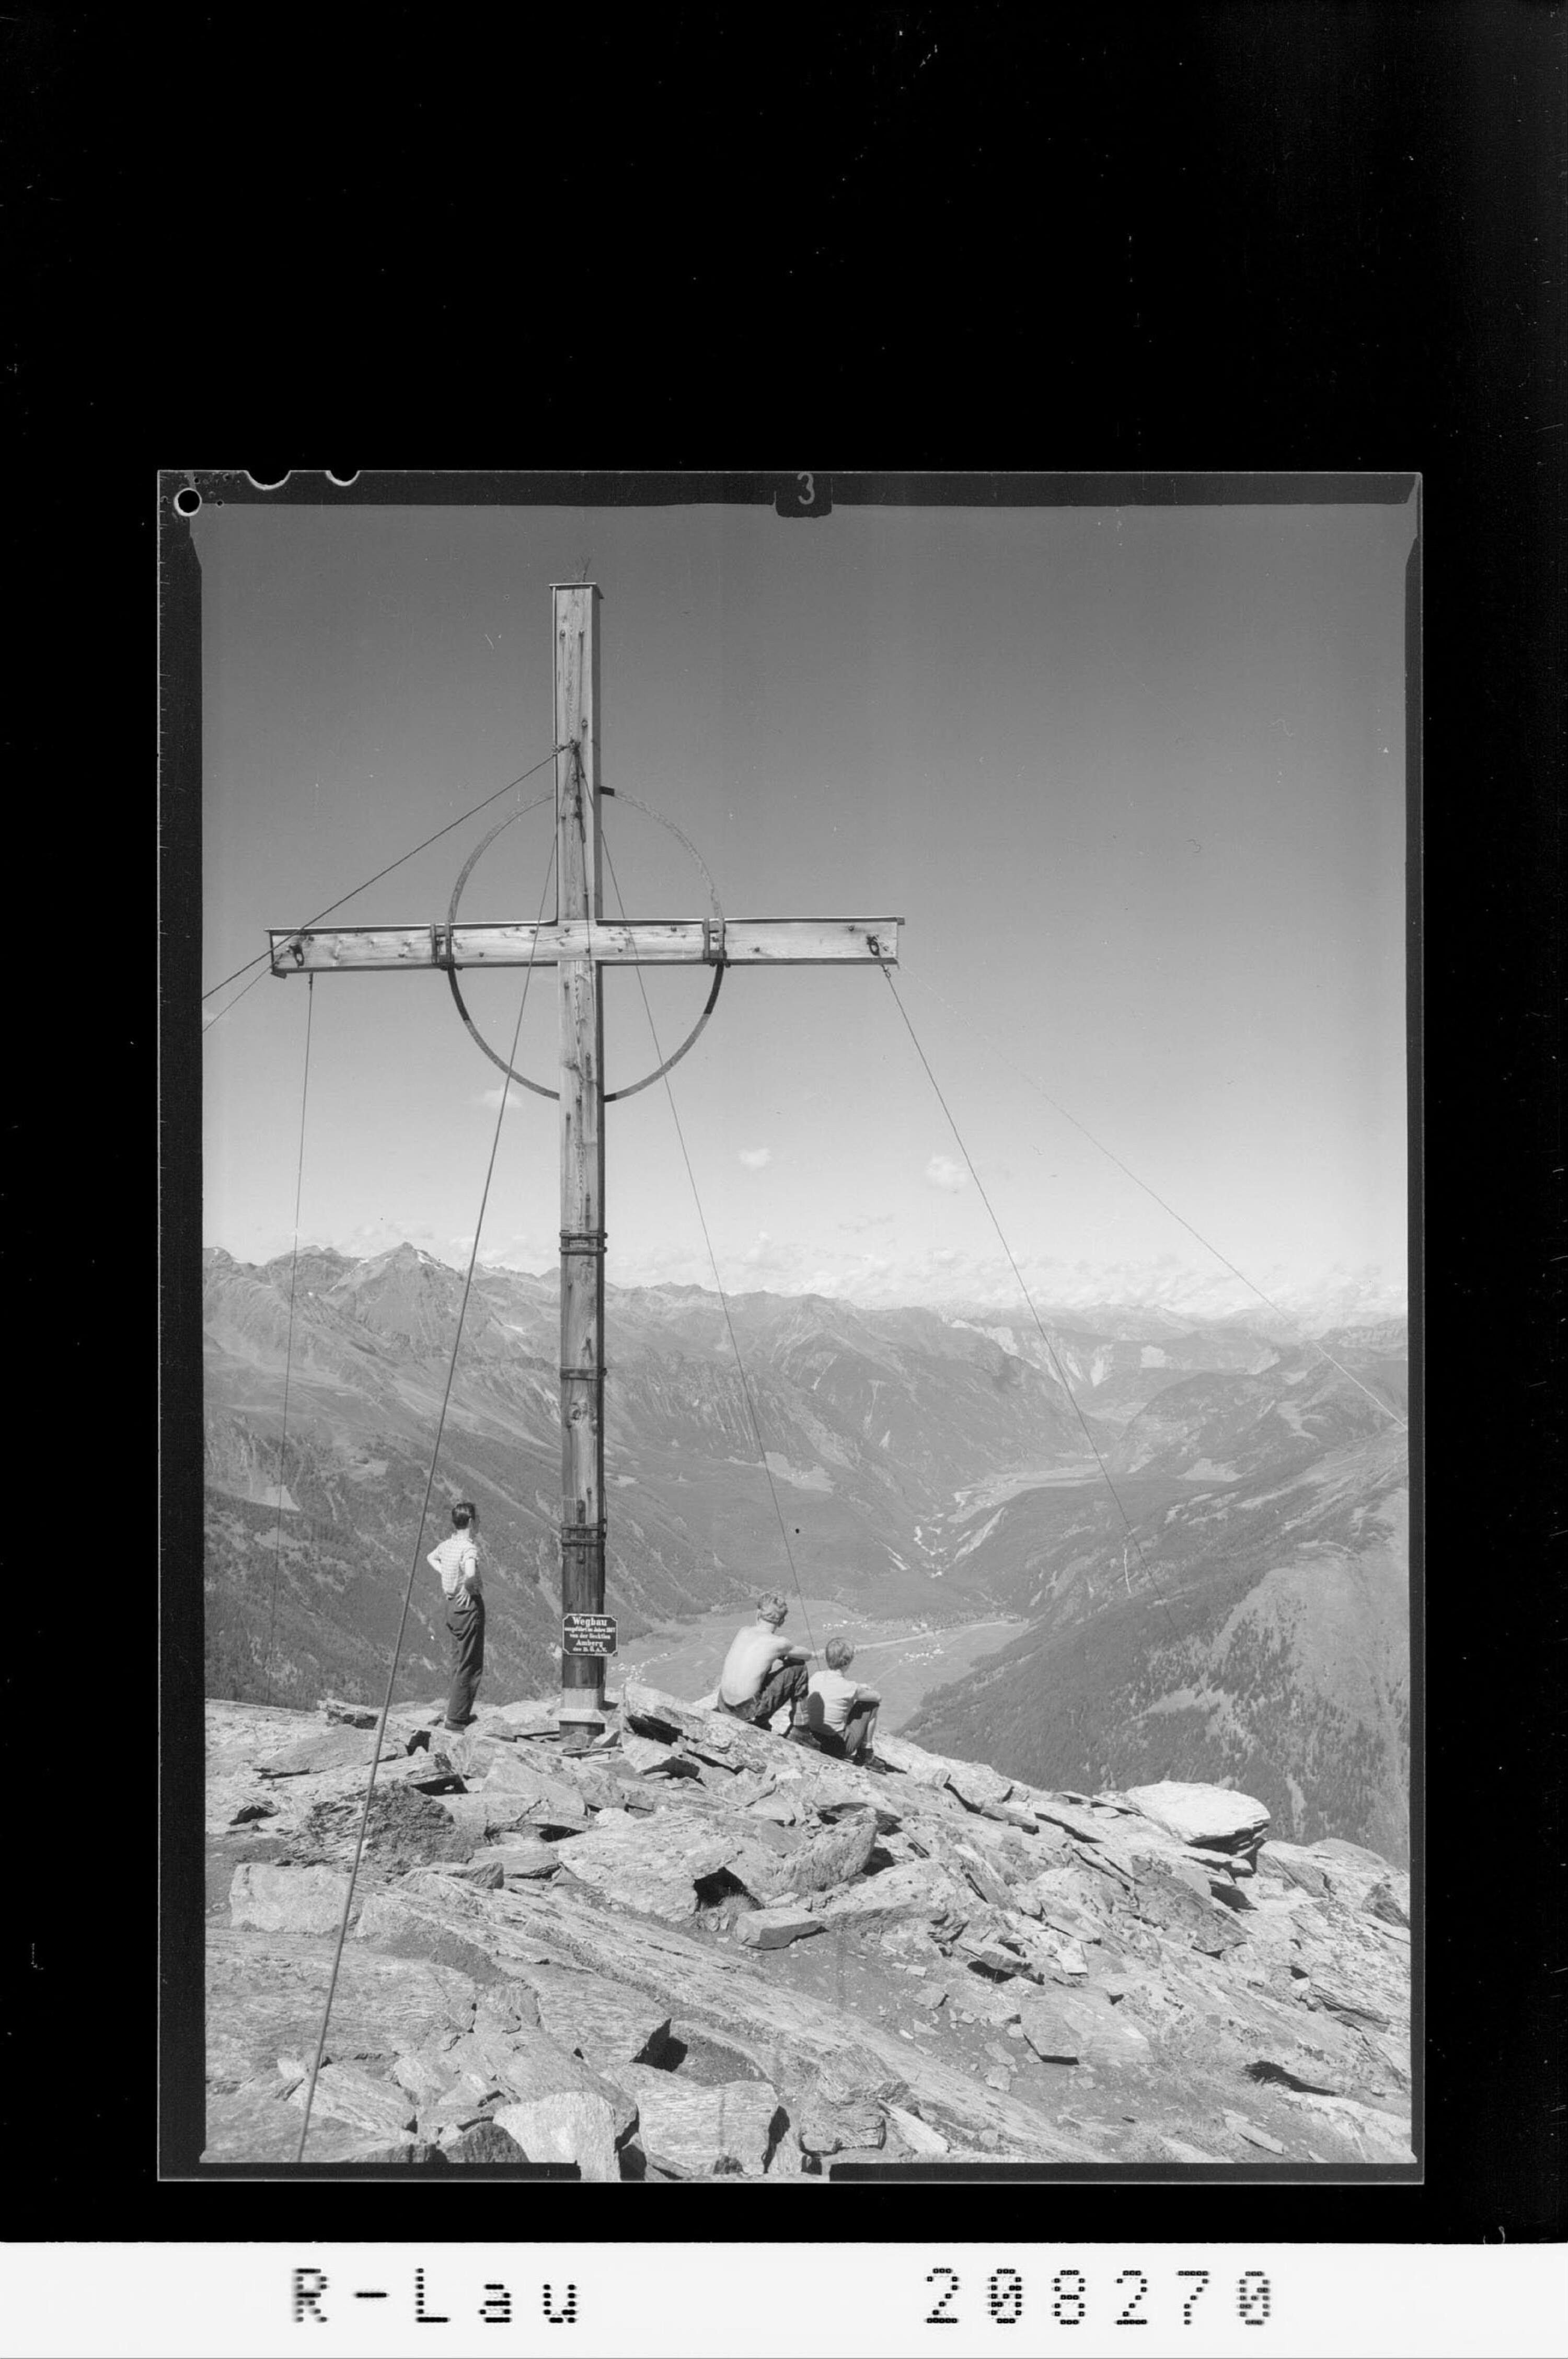 Gamskogl 2815 m / Gipfelkreuz mit Blick ins vordere Ötztal></div>


    <hr>
    <div class=